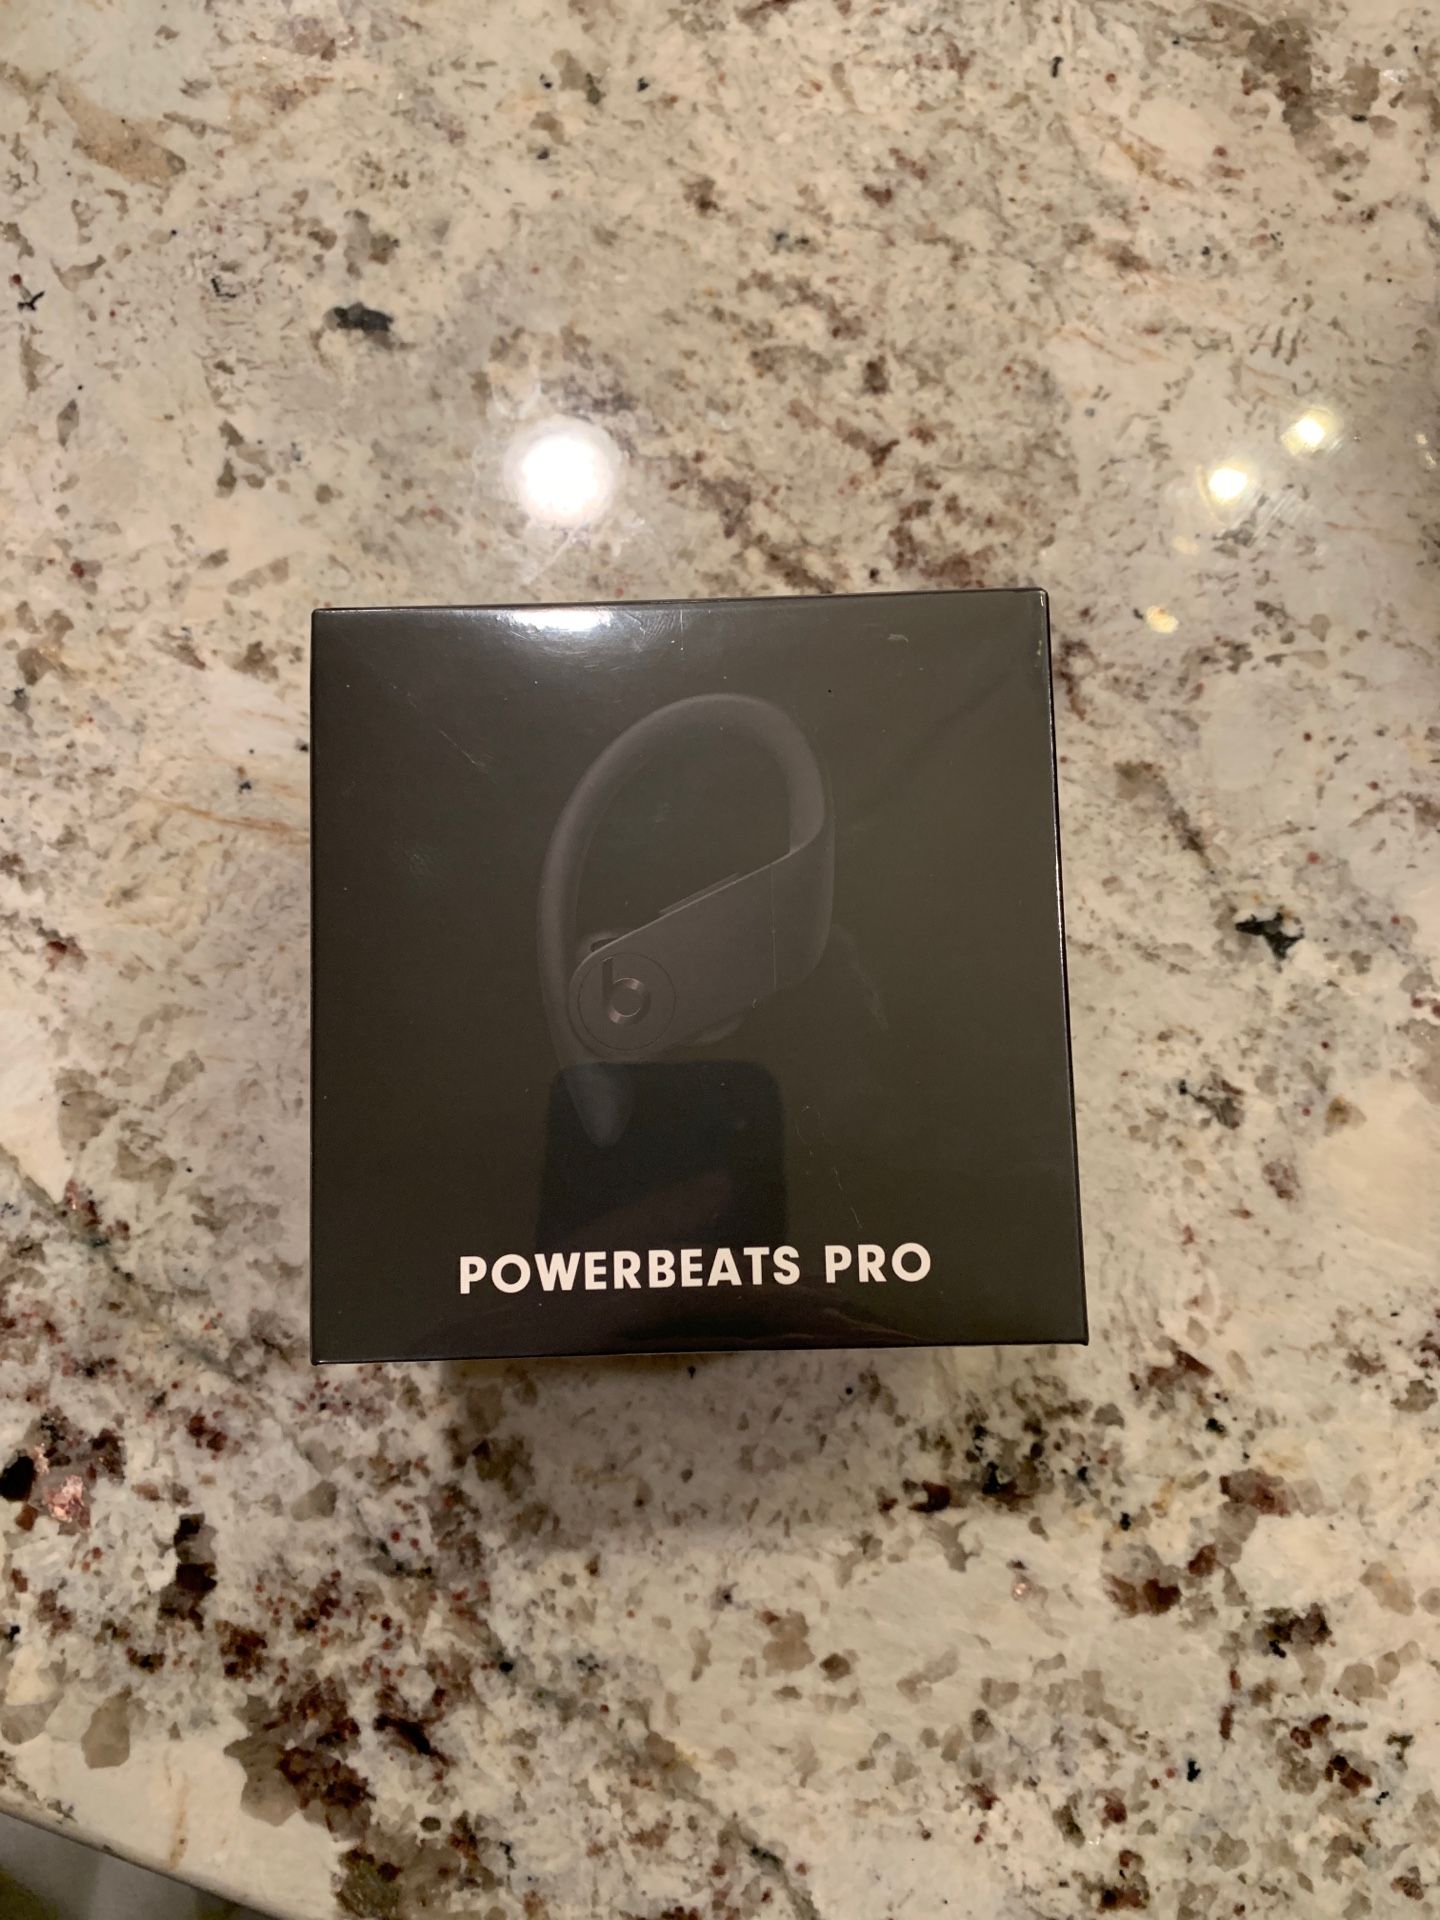 Powerbeats Pro Wireless Earbuds